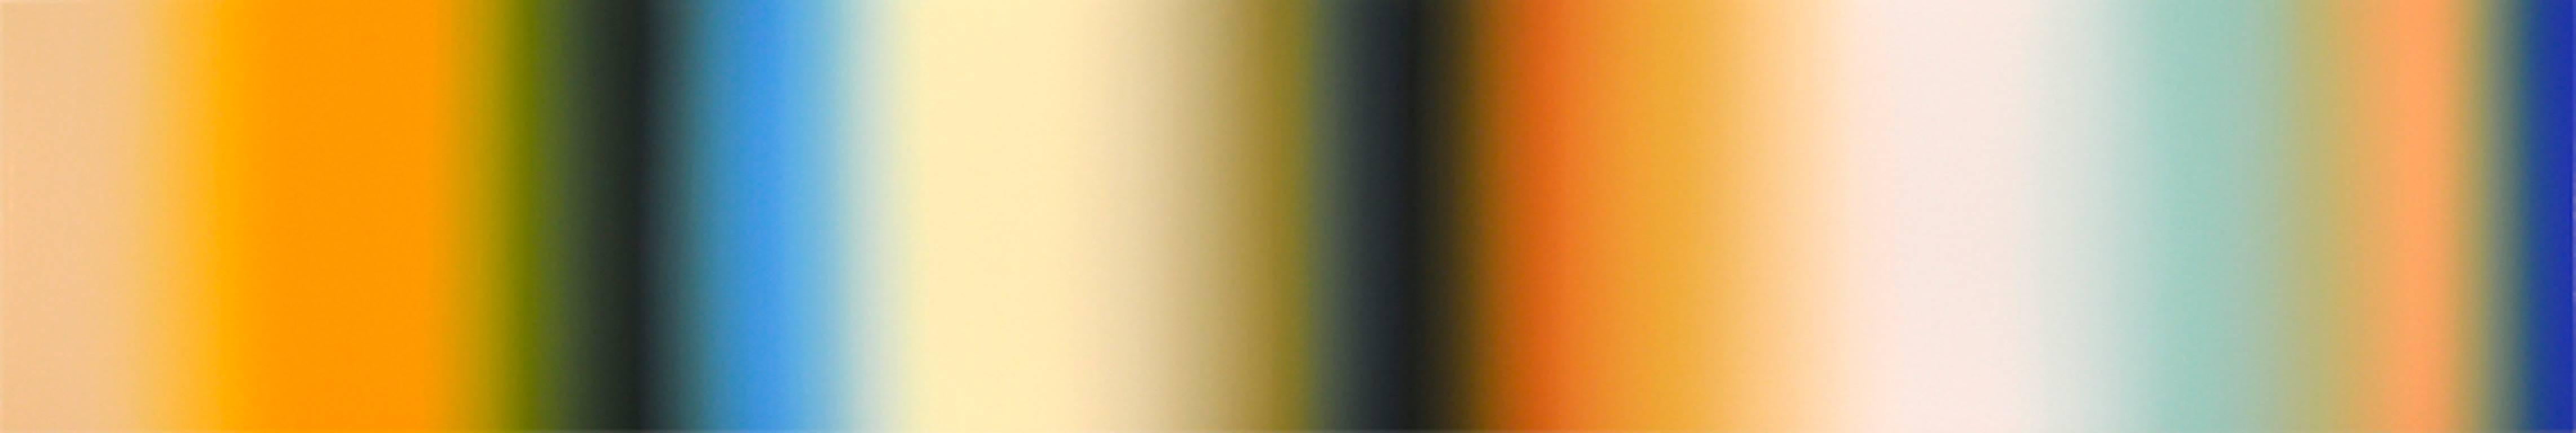 Patrick Dintino Abstract Painting – Tesoro - großes abstraktes Ölgemälde in leuchtender Farbmischung aus Blau, Weiß und Orange